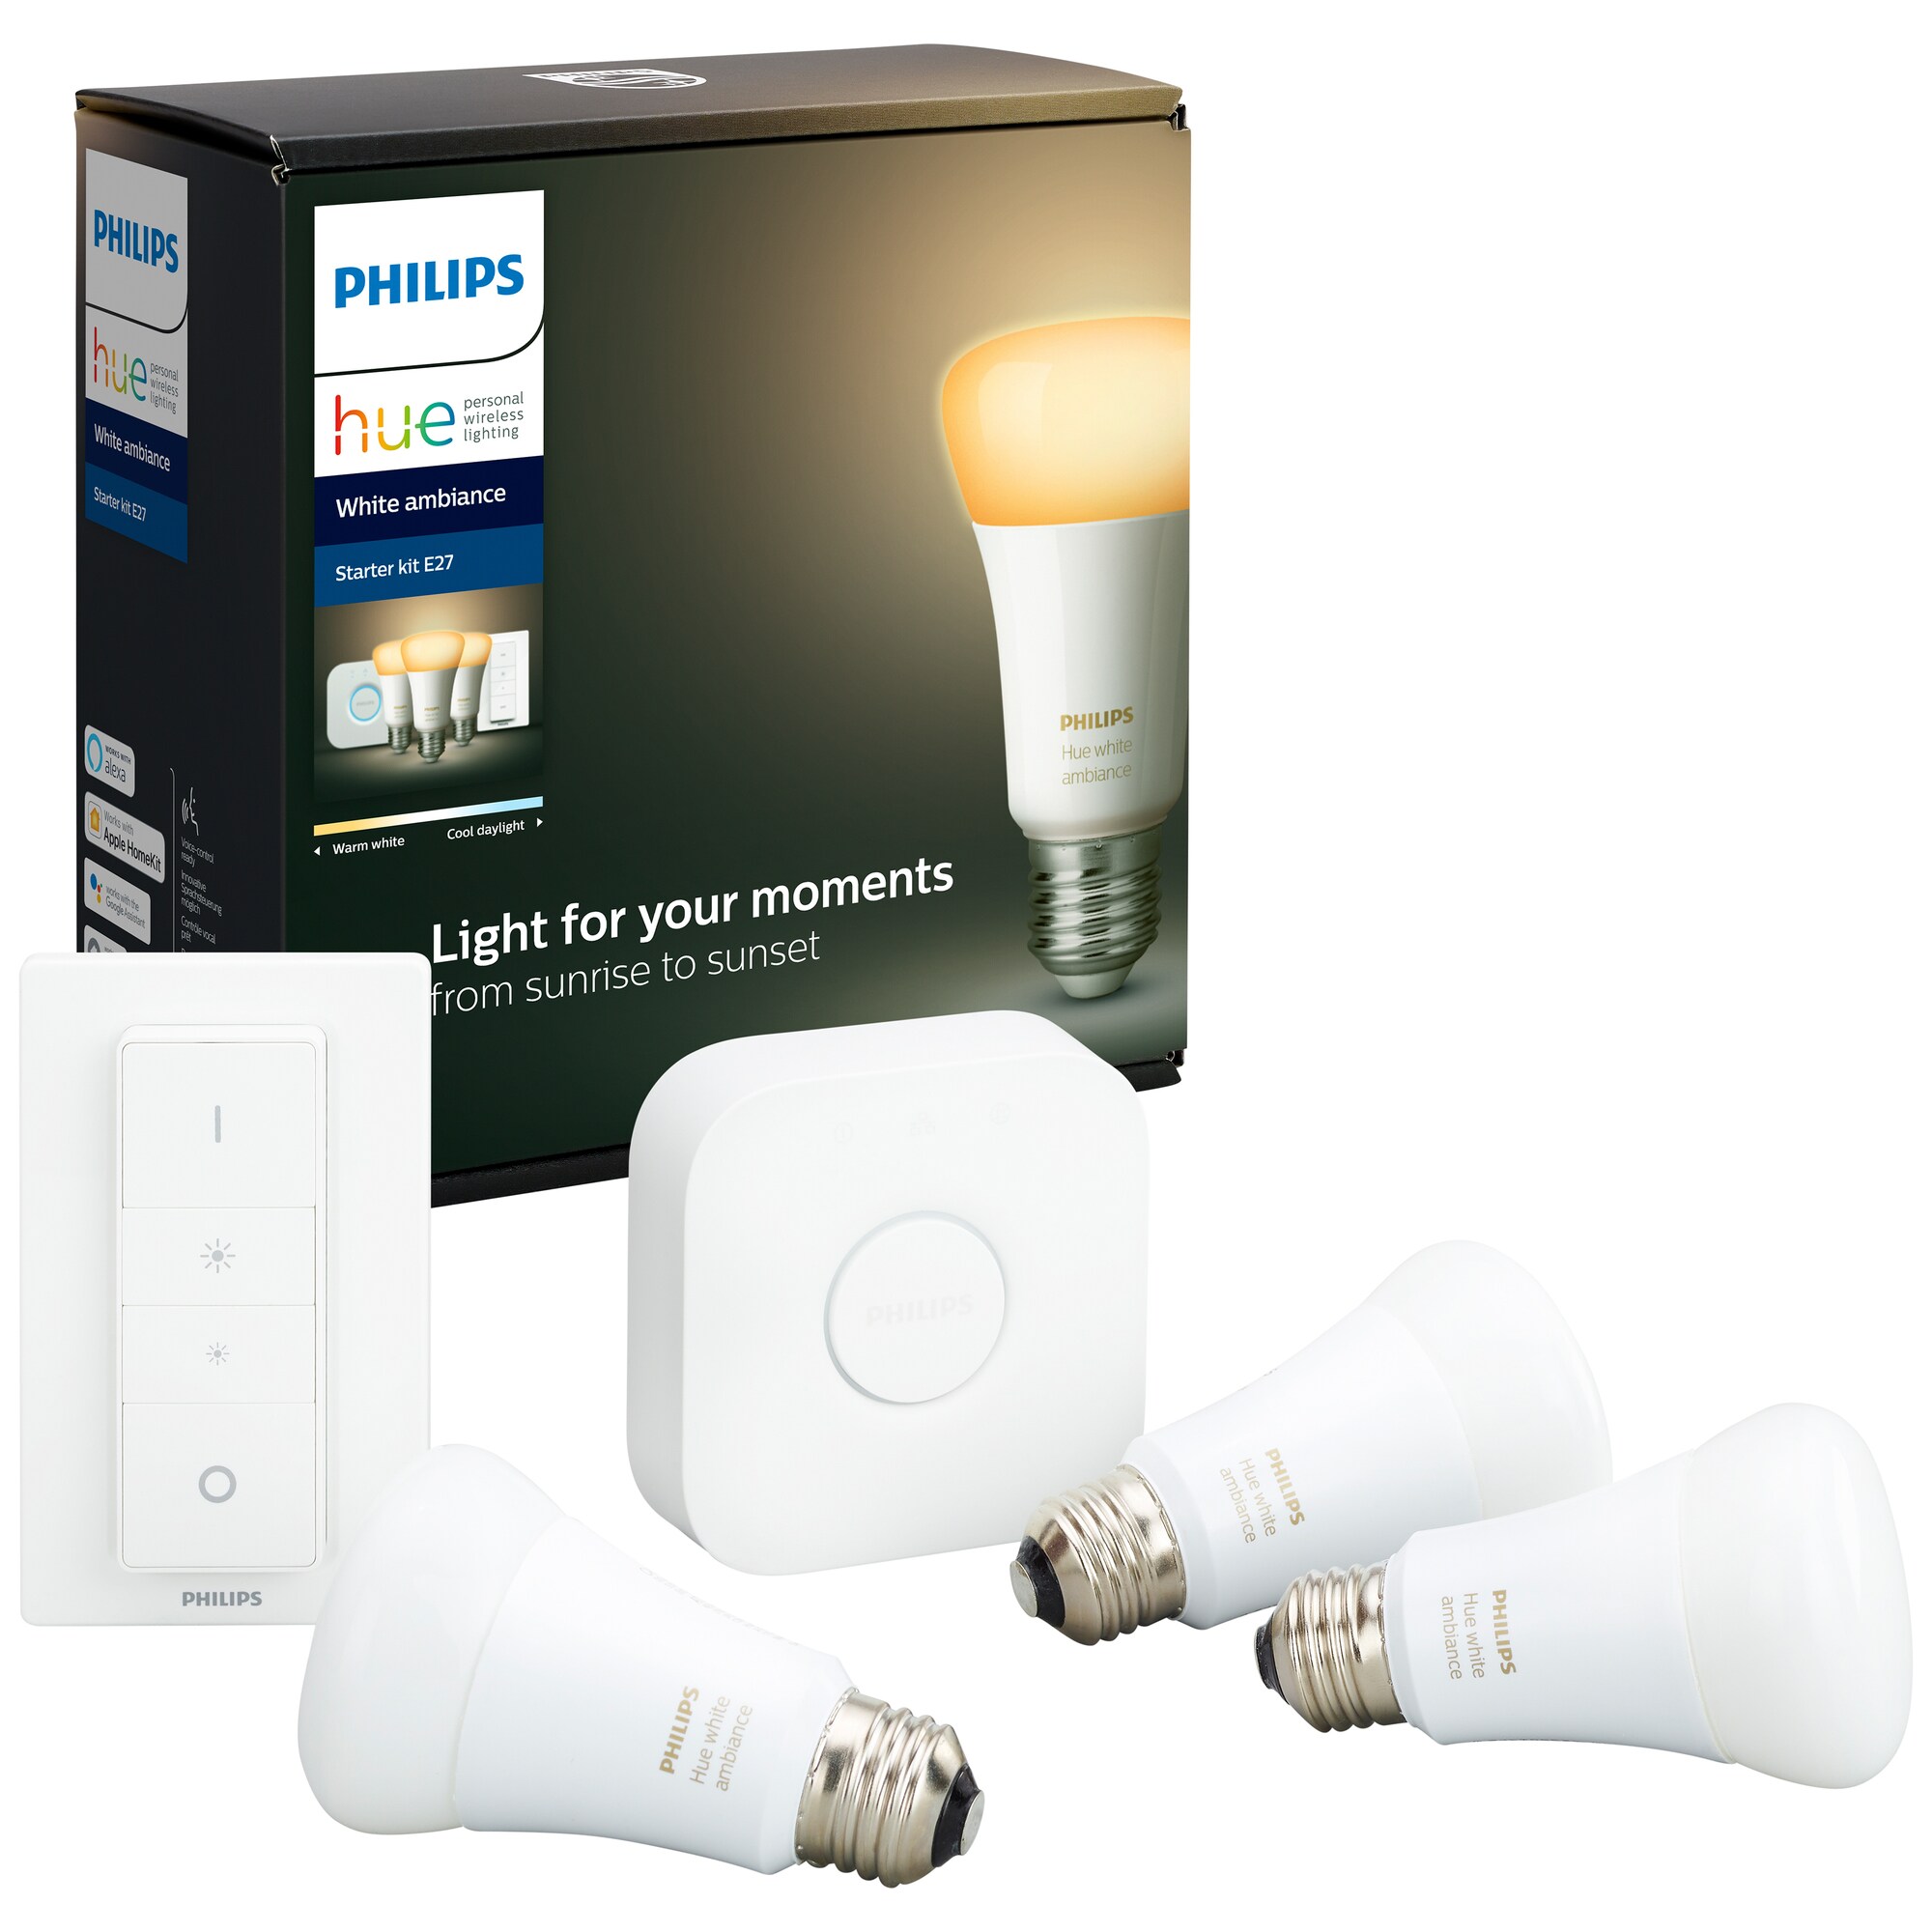 Smart belysning - fjärrstyr lampor och belysning hemma - Elgiganten